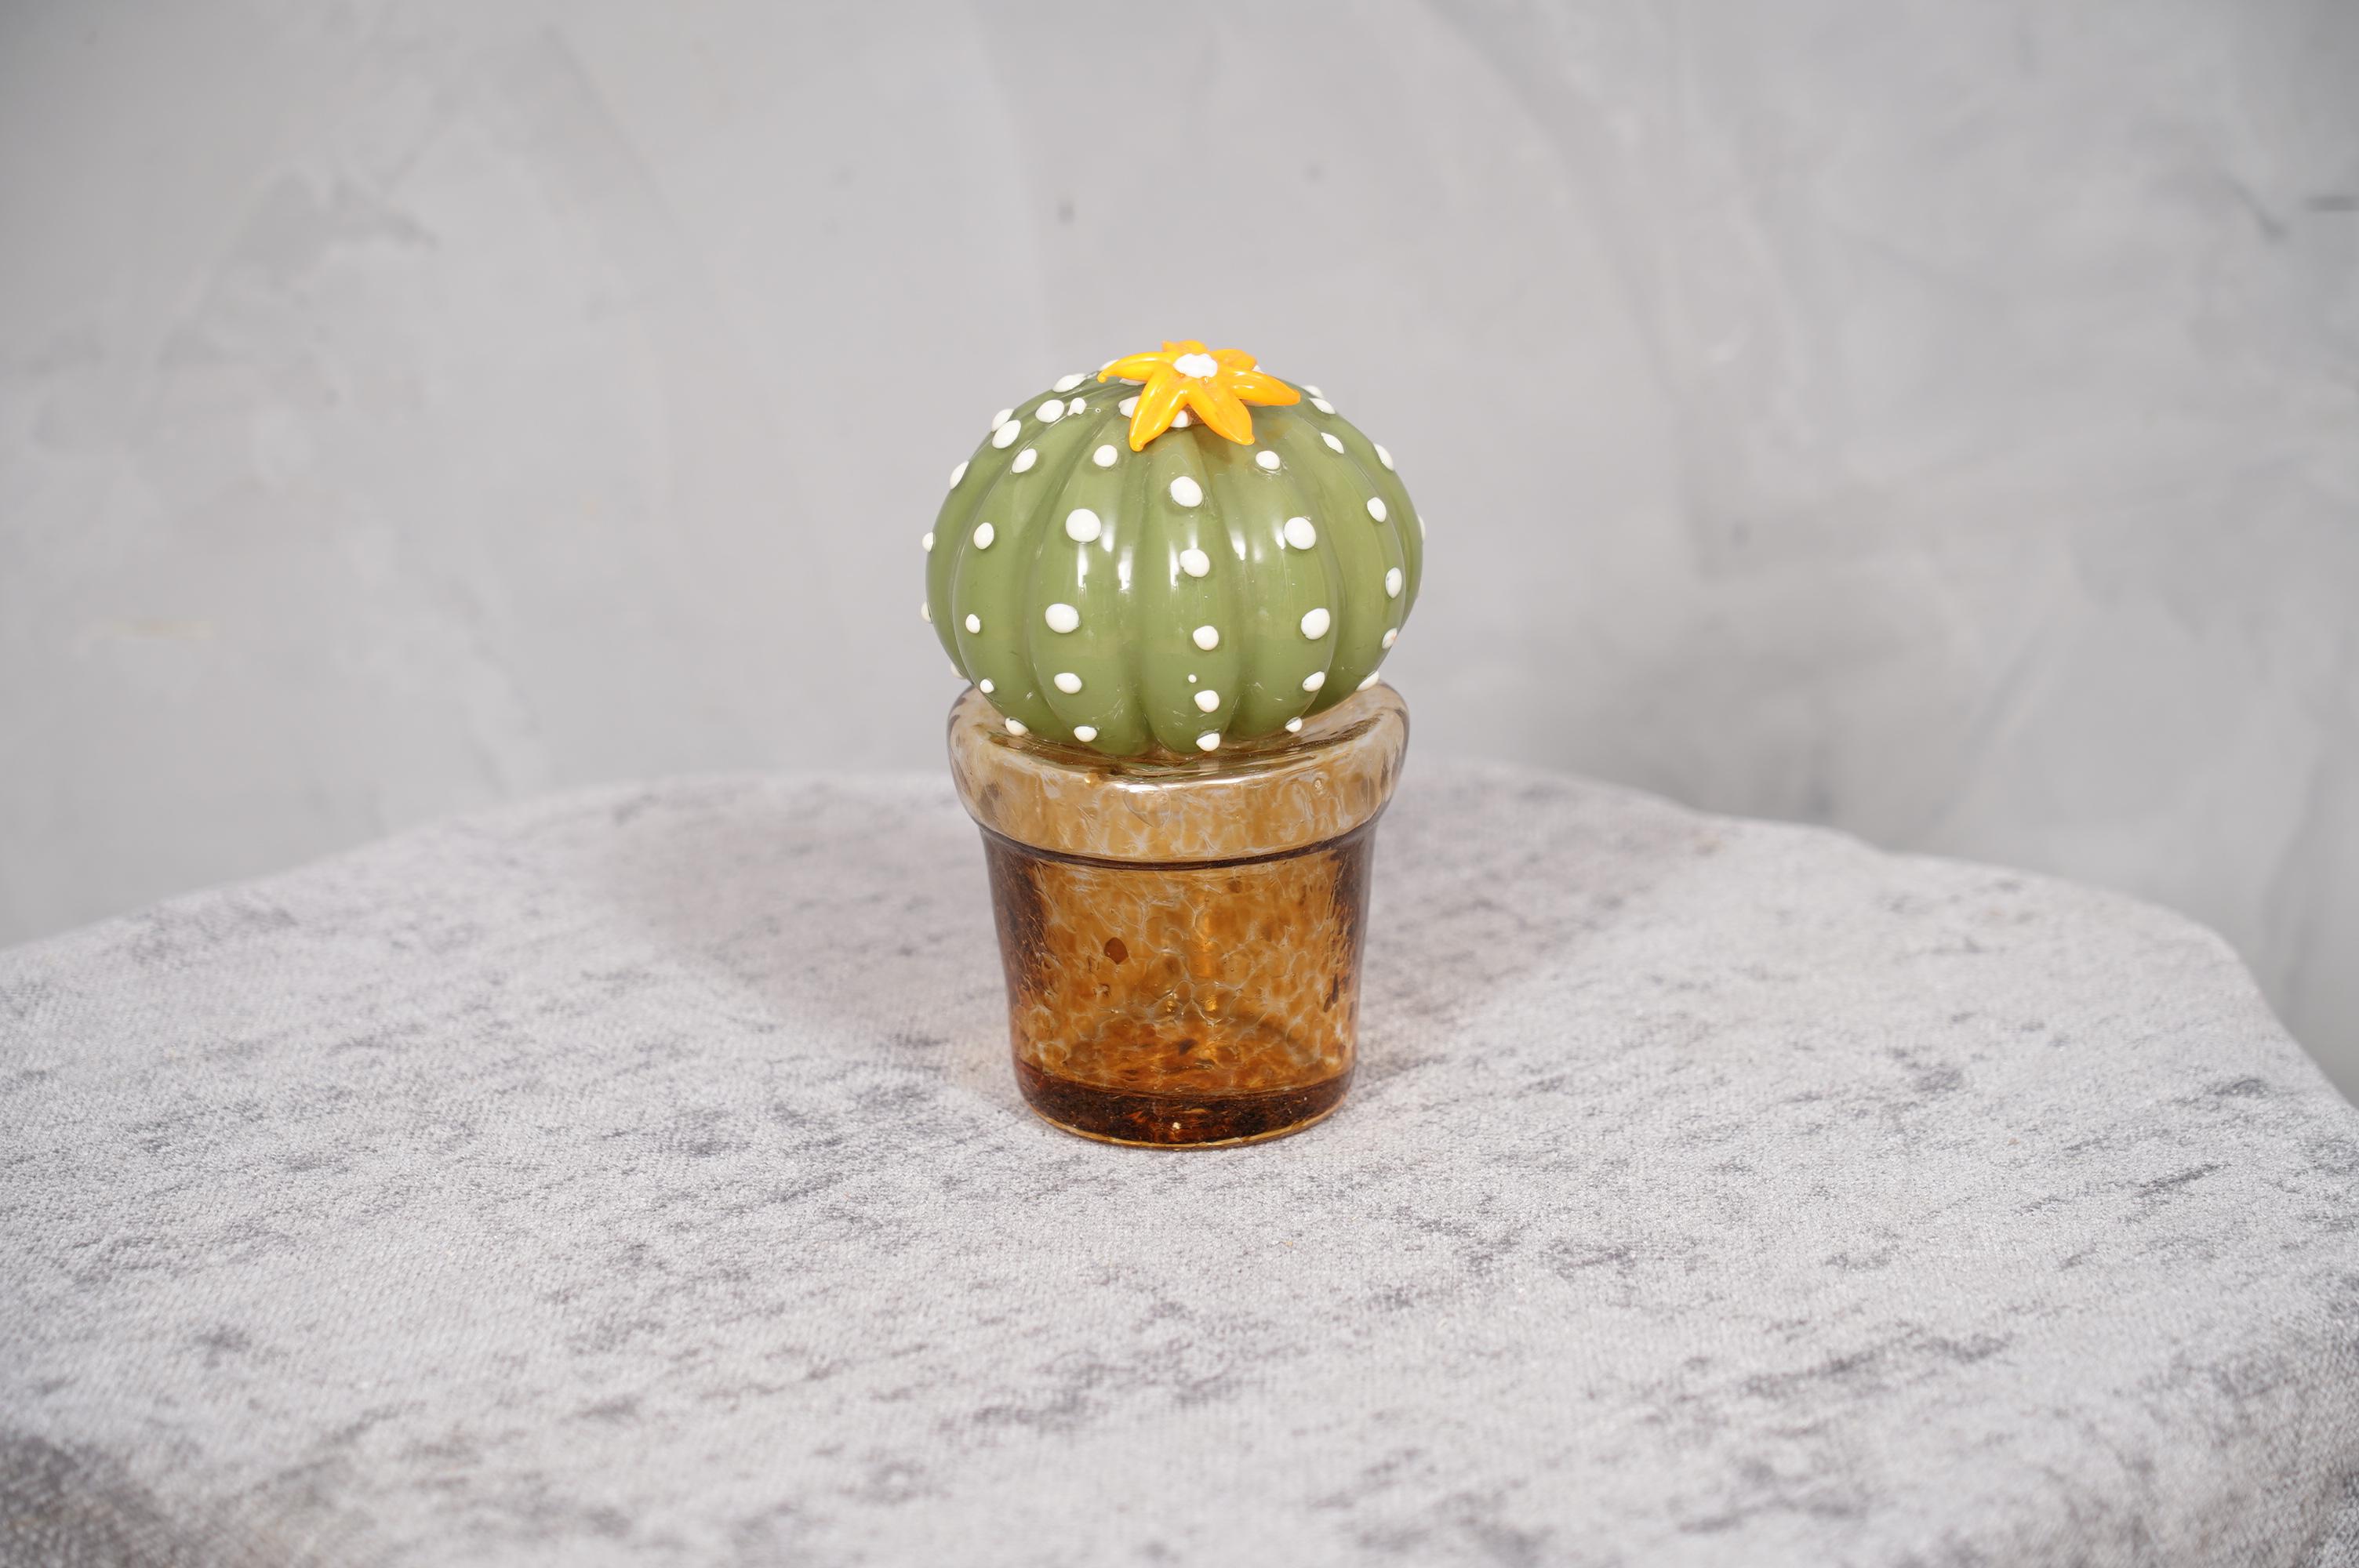 Design/One, ce cactus est une icône de la mode italienne, vert avec un beau vase en verre ambré en dessous.

En édition limitée, fabriqués dans l'un des fours de Venise, les cactus sont en verre de Murano ont un vase en verre ambré et ont chacun une